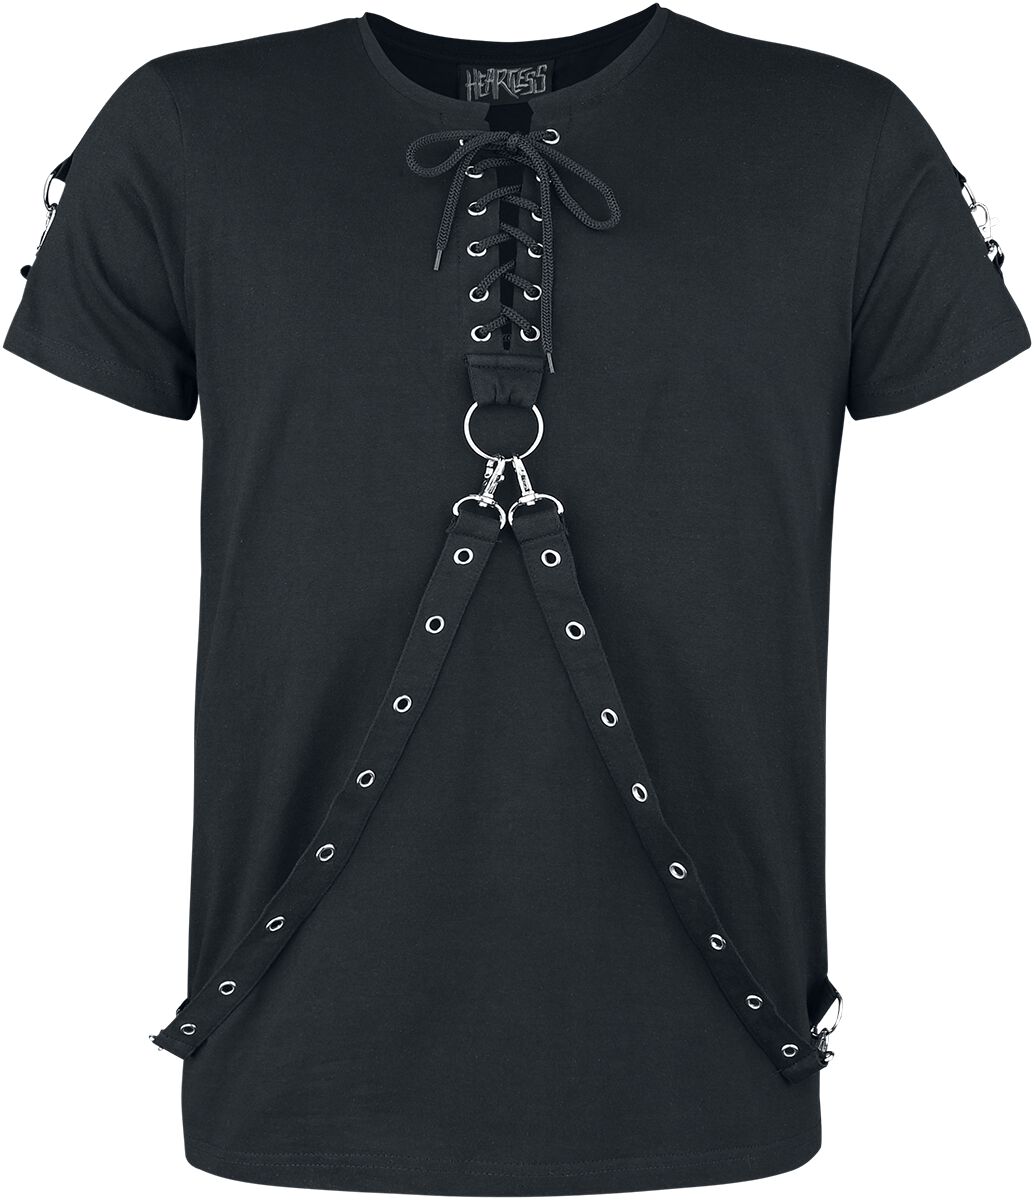 Heartless - Gothic T-Shirt - Einer Top - S bis 4XL - für Männer - Größe M - schwarz